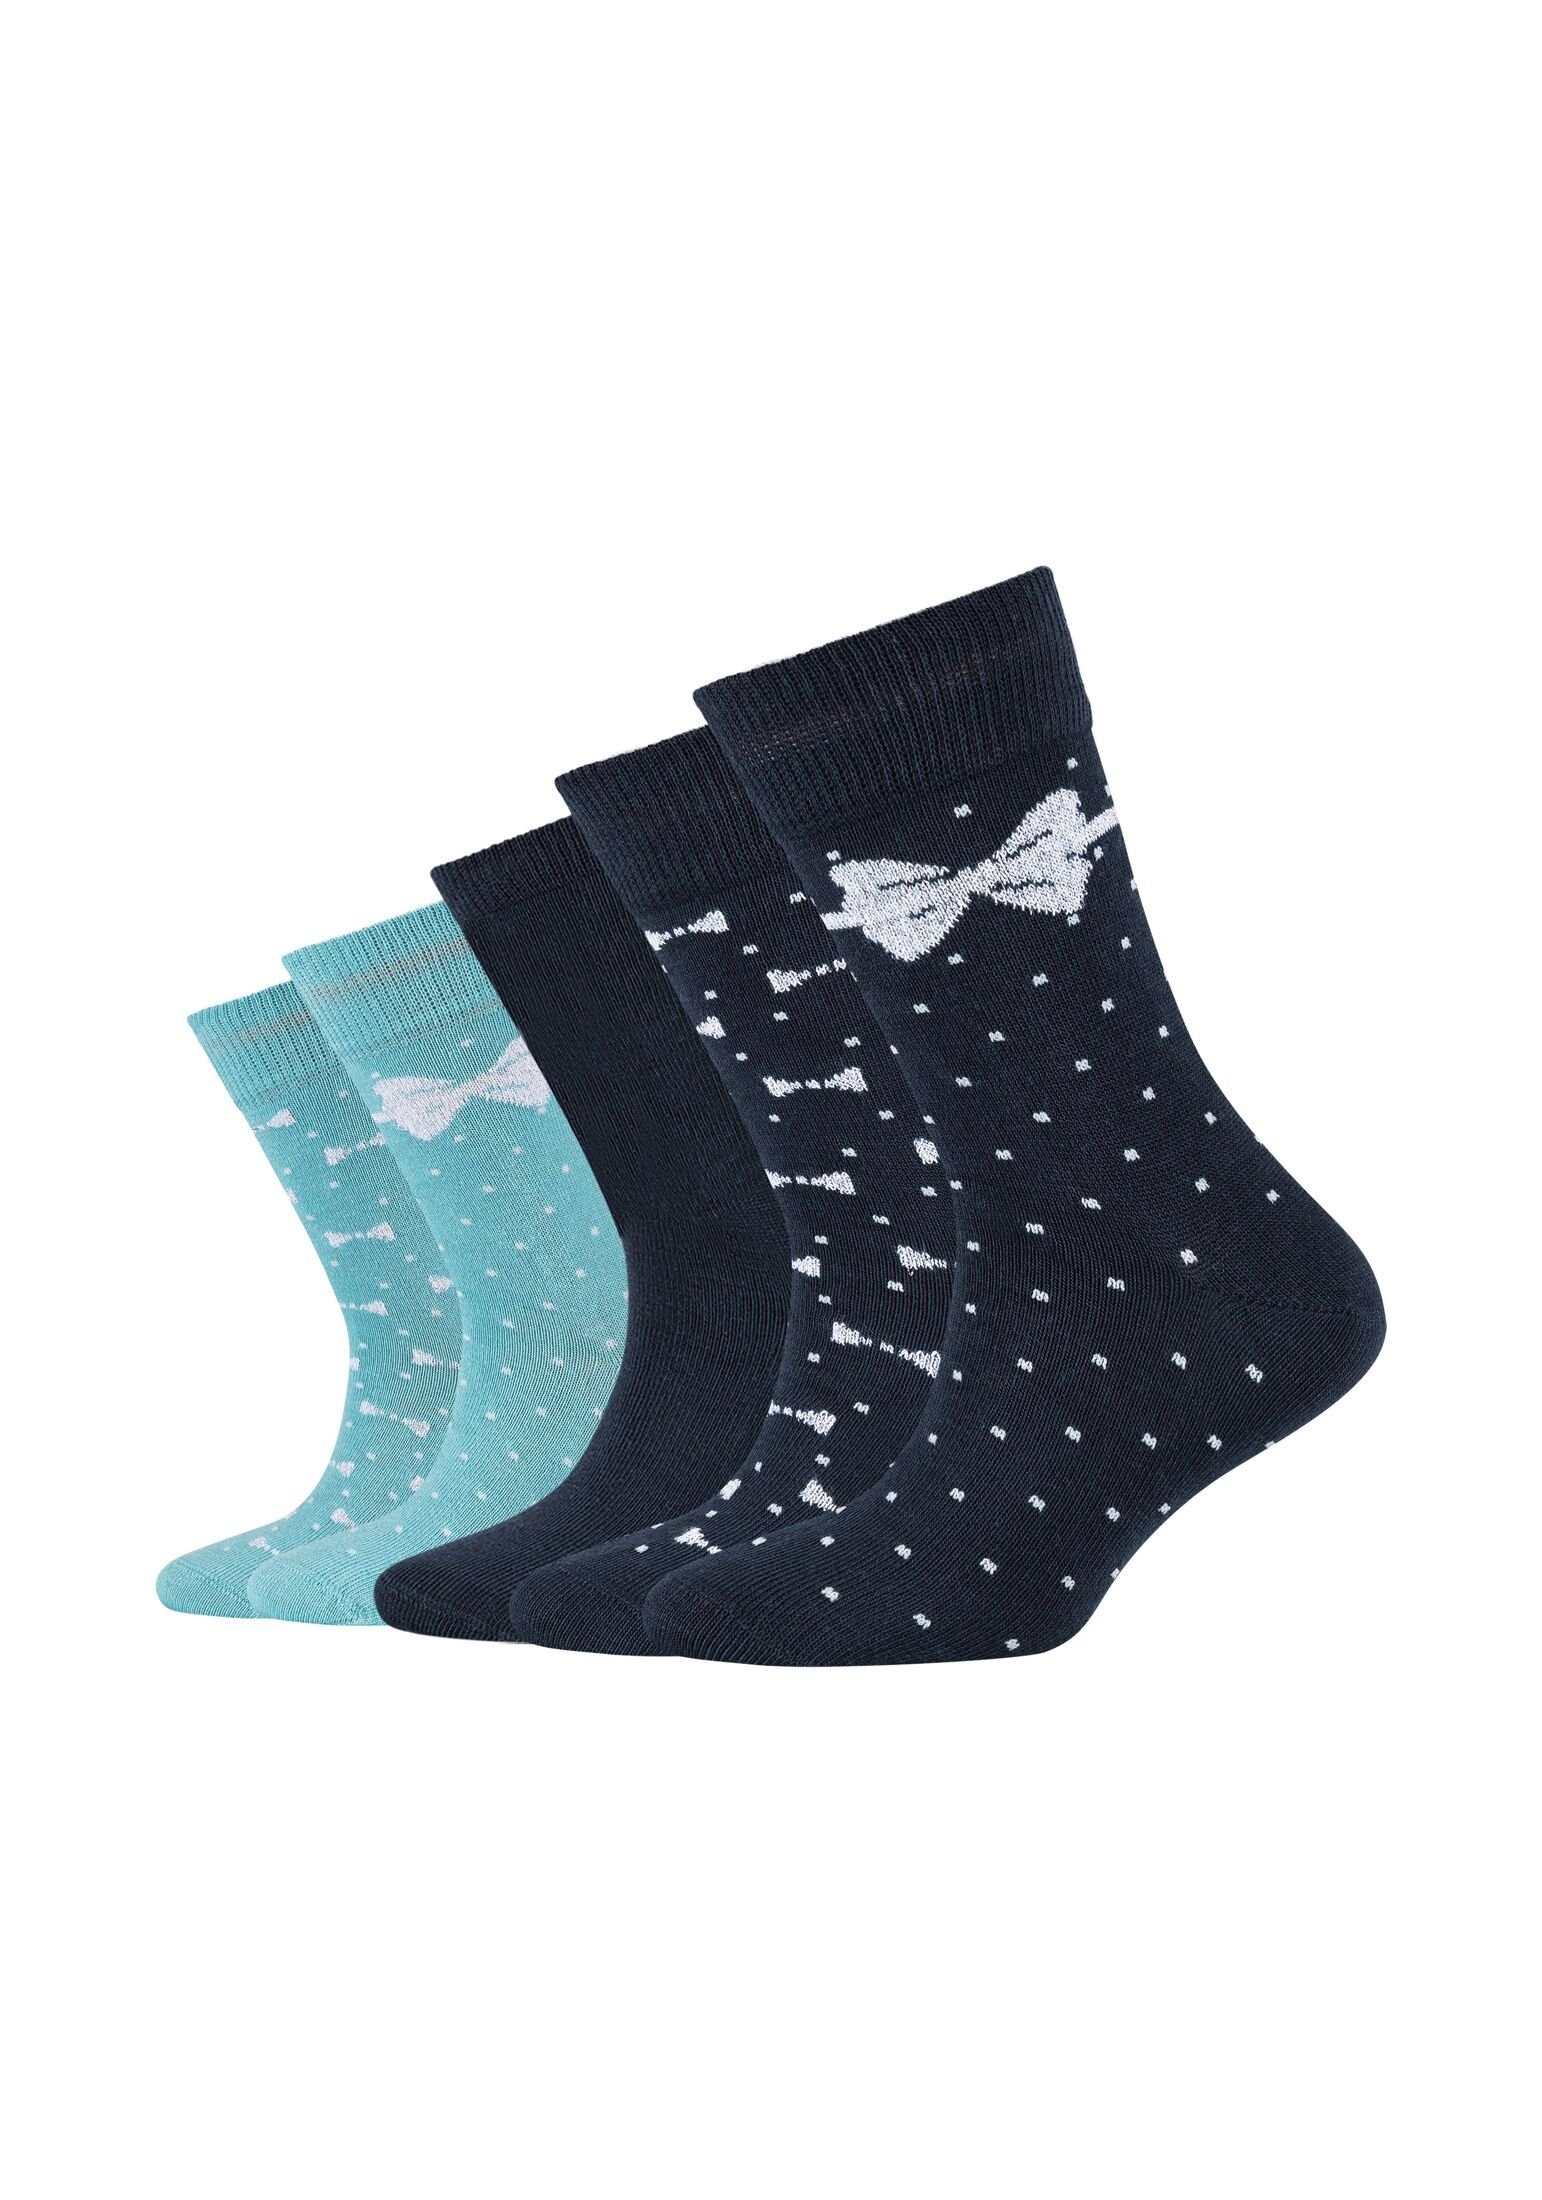 Anteil hoher Camano an Socken gekämmter Socken Pack, 5er Atmungsaktiv: Bio-Baumwolle